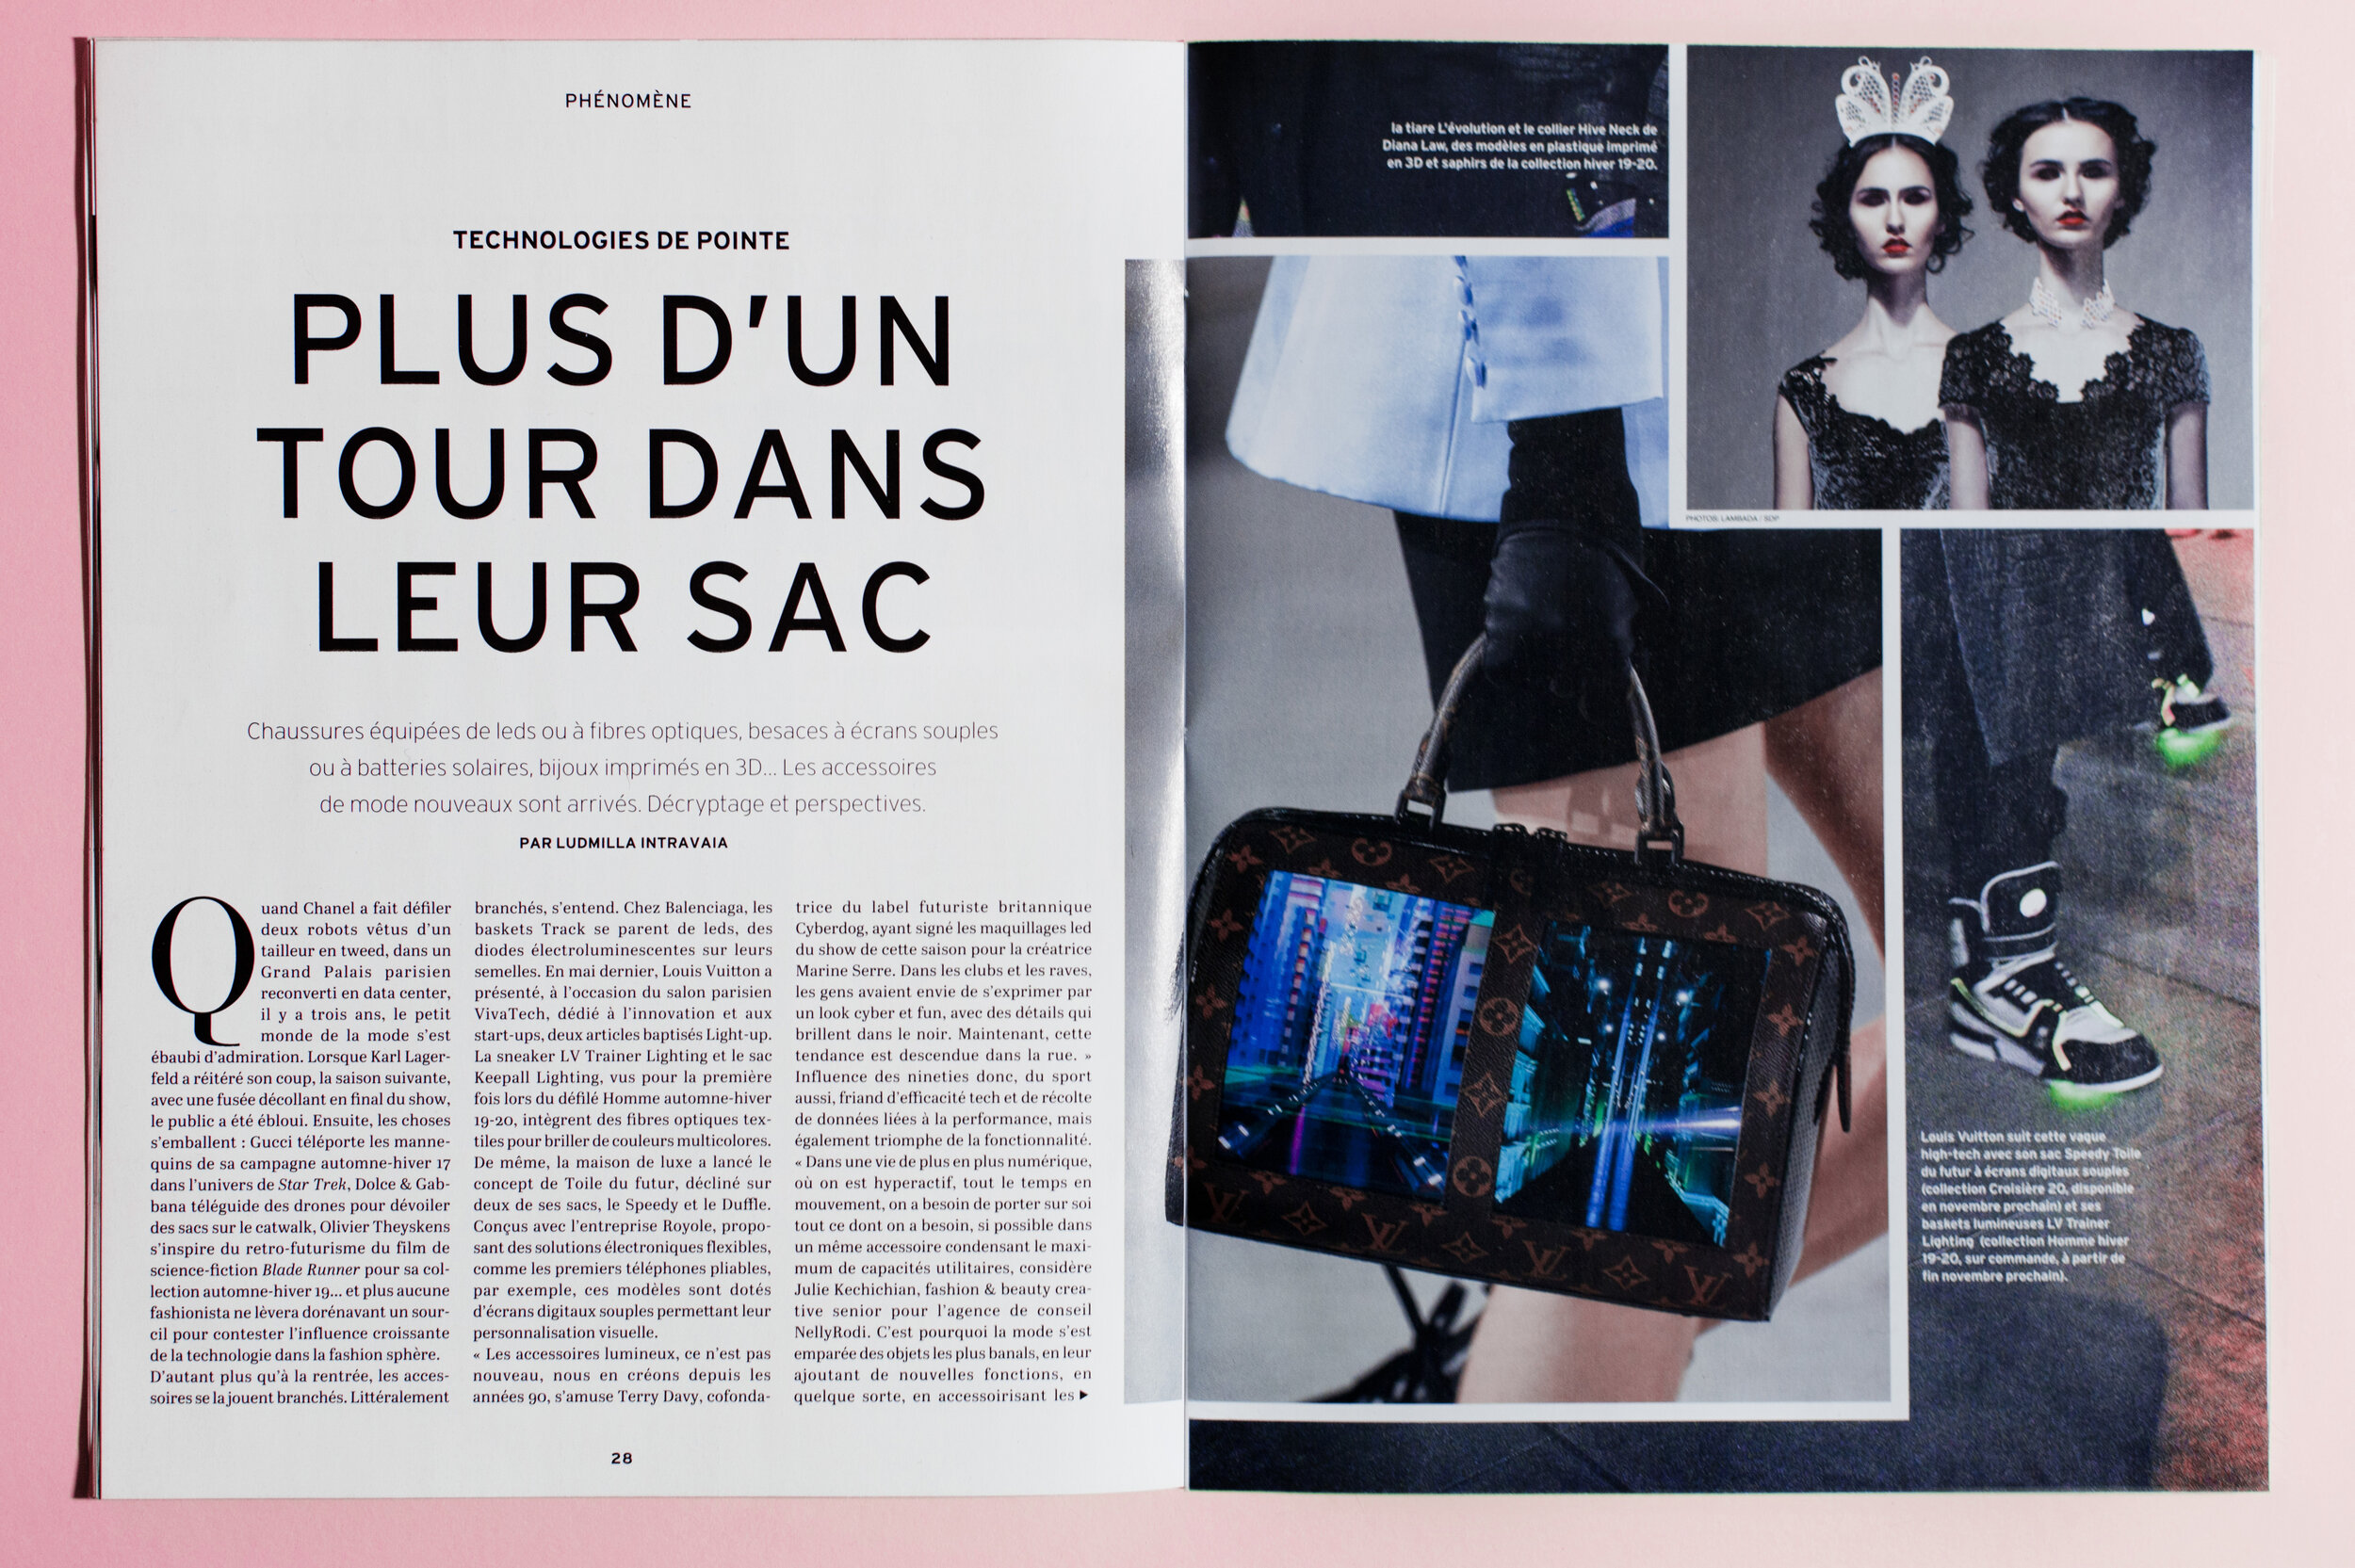 19 Louis Vuitton ideas  louis vuitton, louis, vuitton